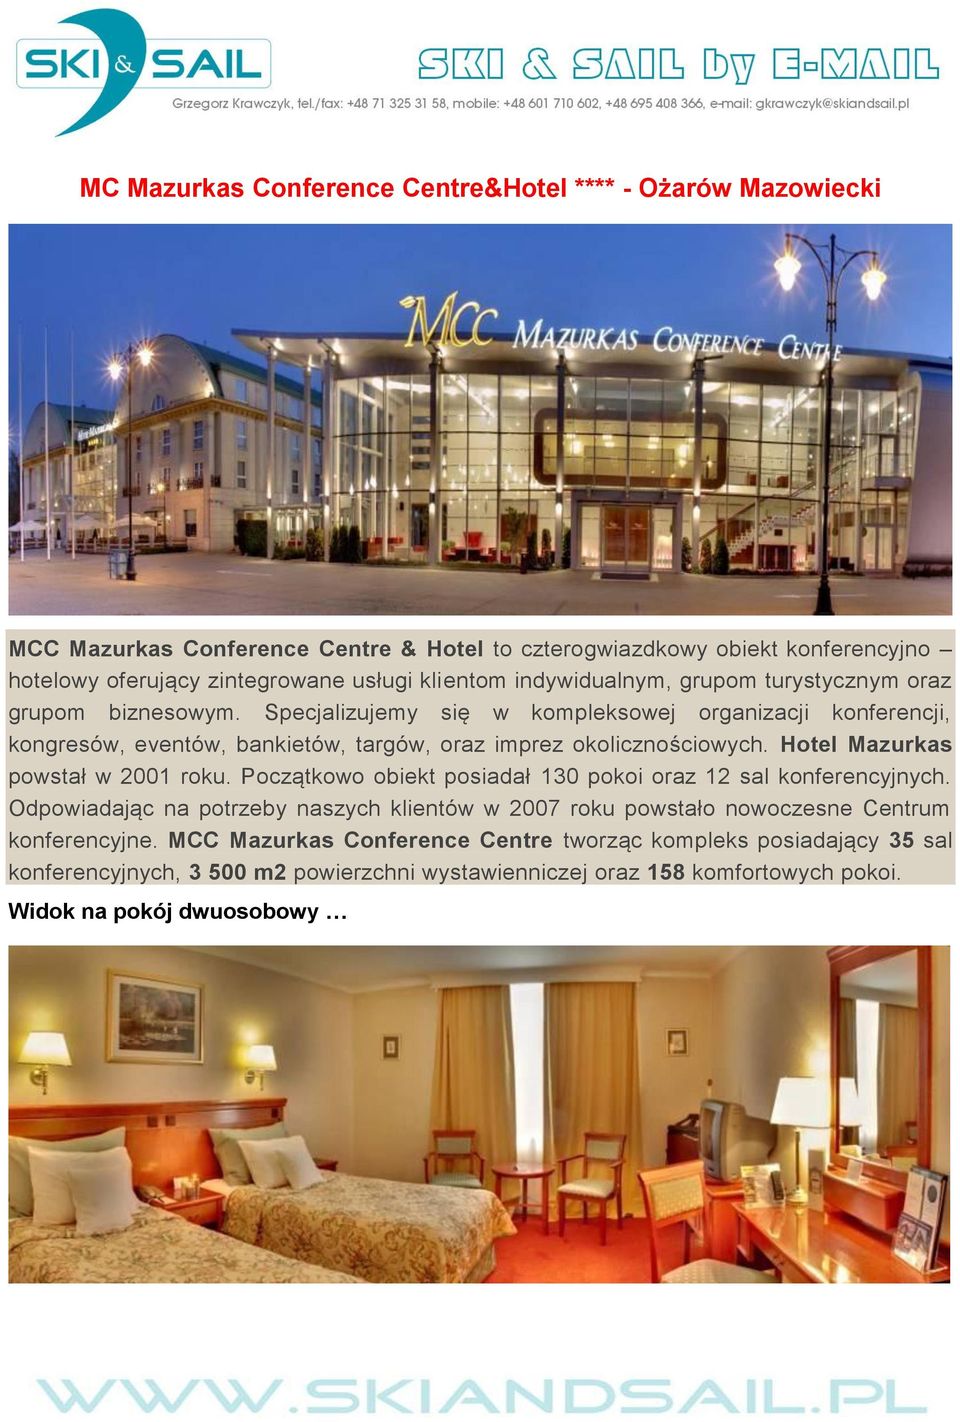 Specjalizujemy się w kompleksowej organizacji konferencji, kongresów, eventów, bankietów, targów, oraz imprez okolicznościowych. Hotel Mazurkas powstał w 2001 roku.